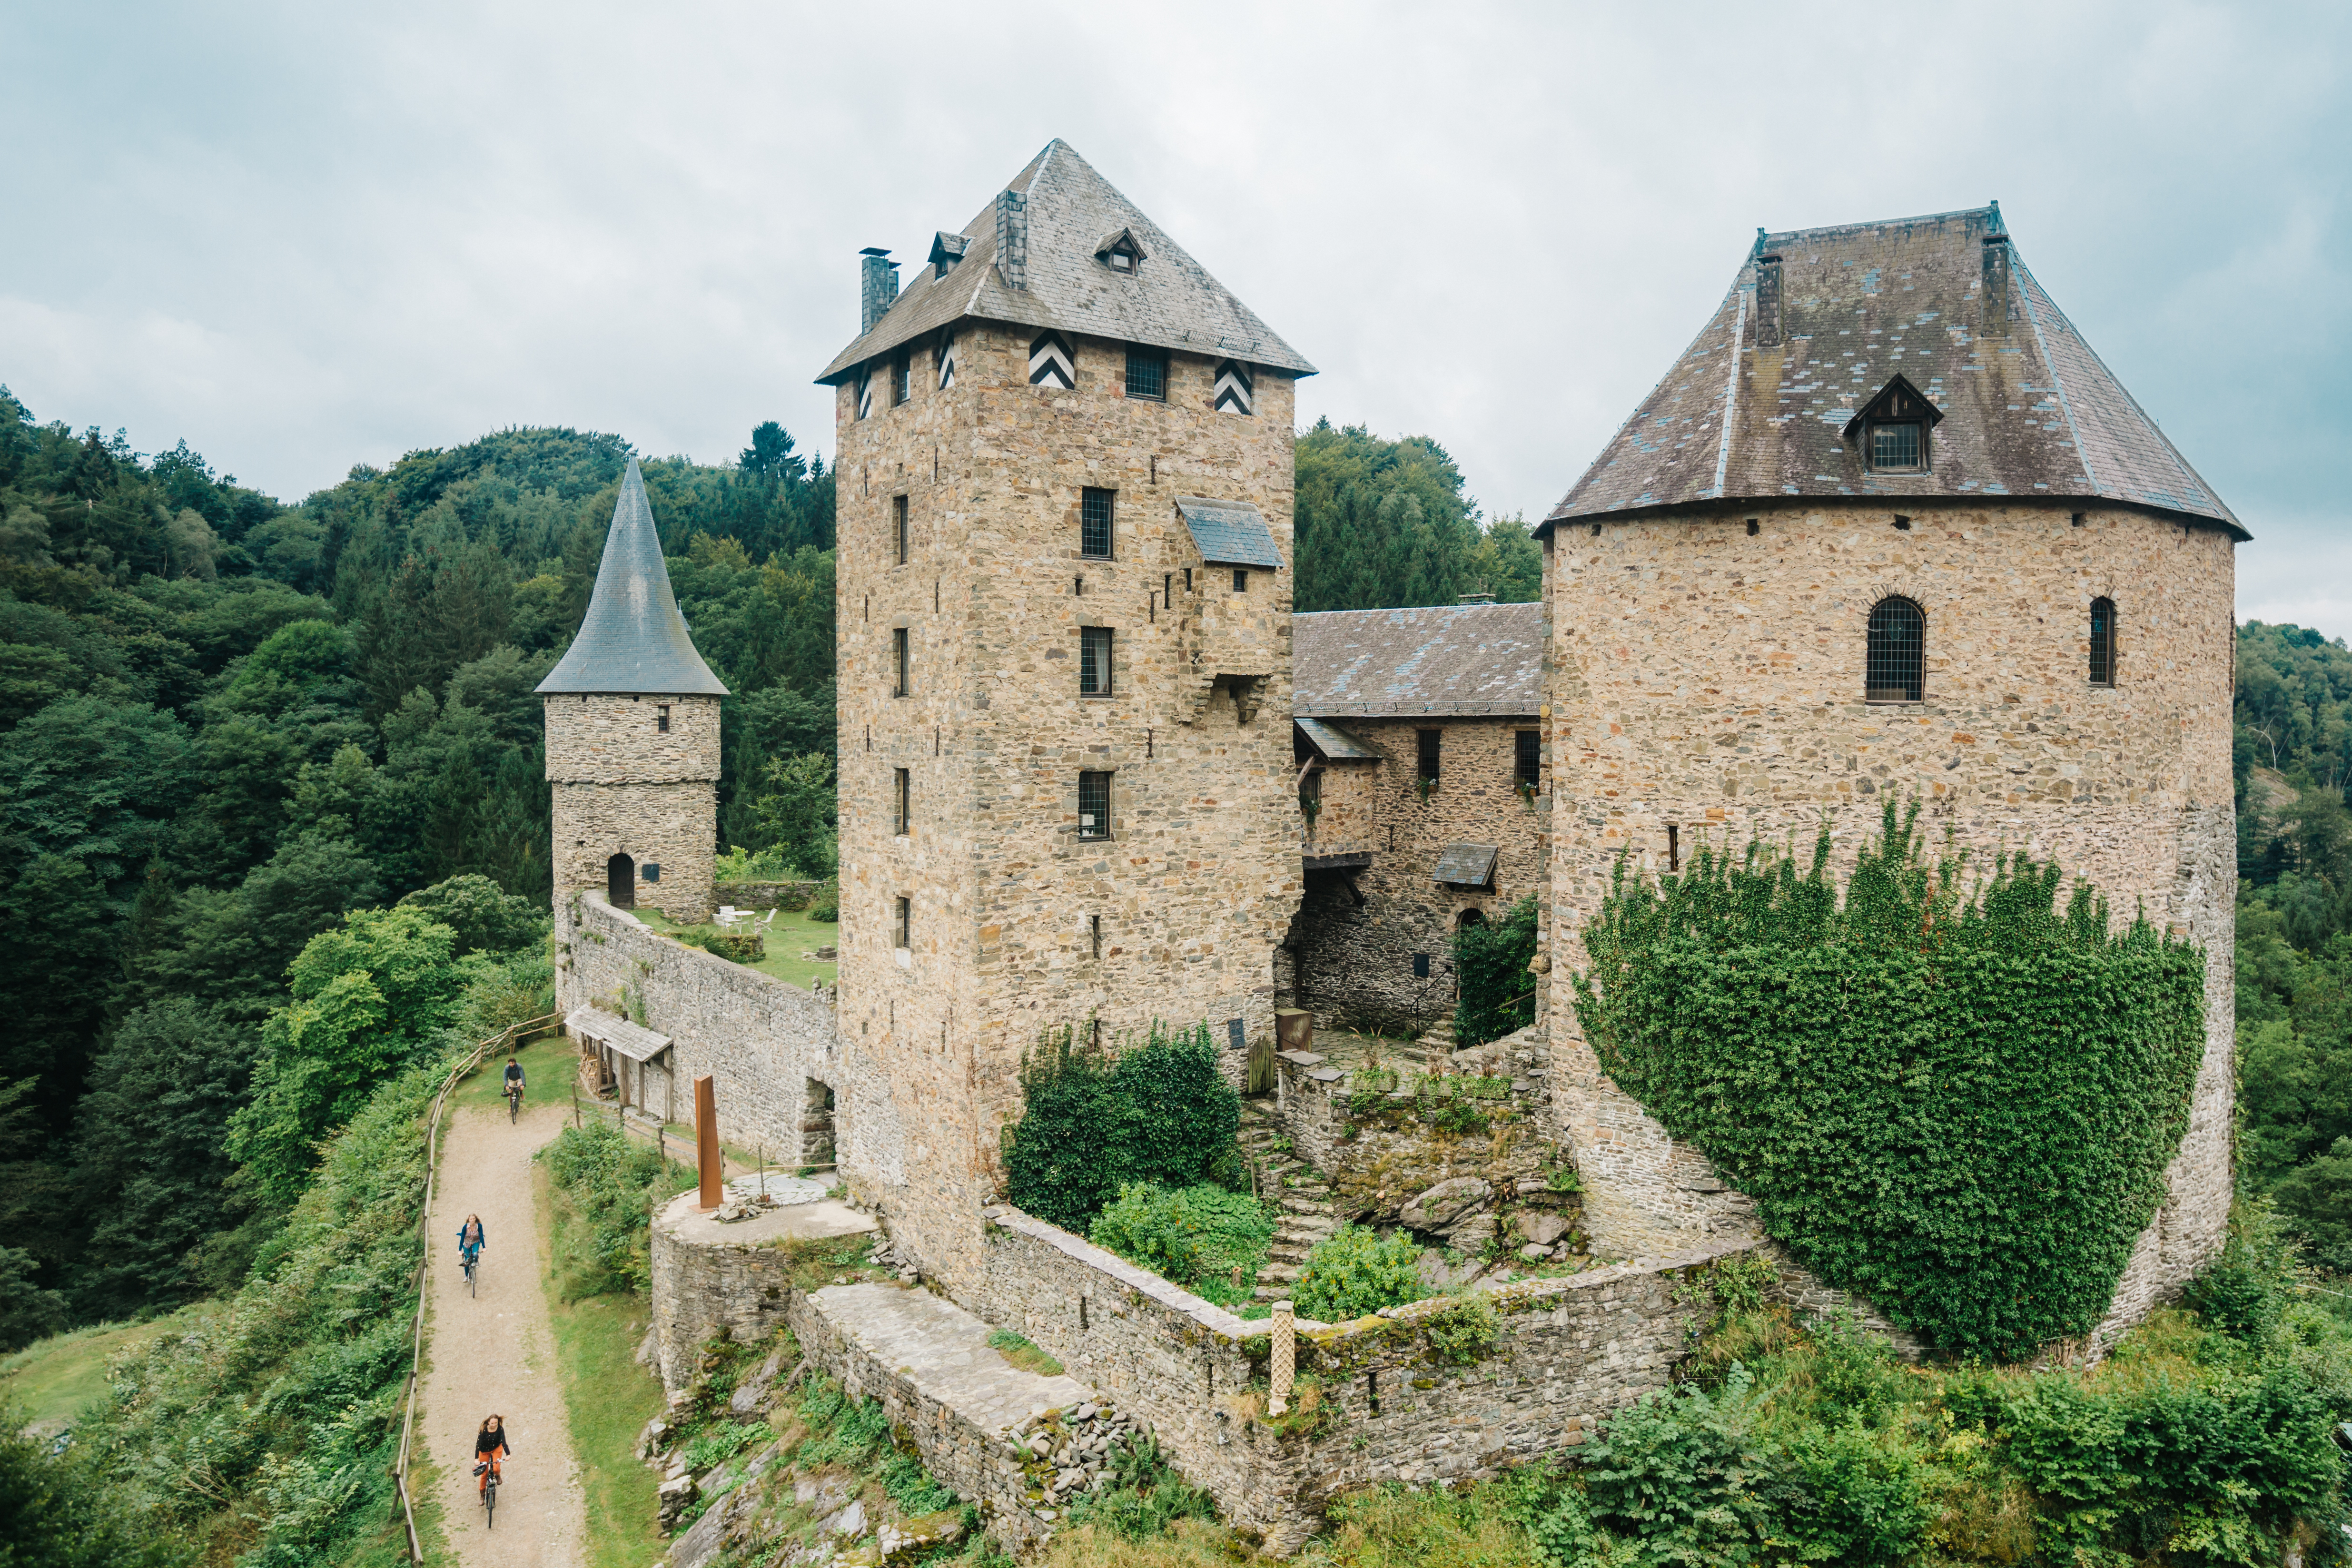 Blick auf die Burg Reinhardstein in Ovifat in der Provinz Lüttich